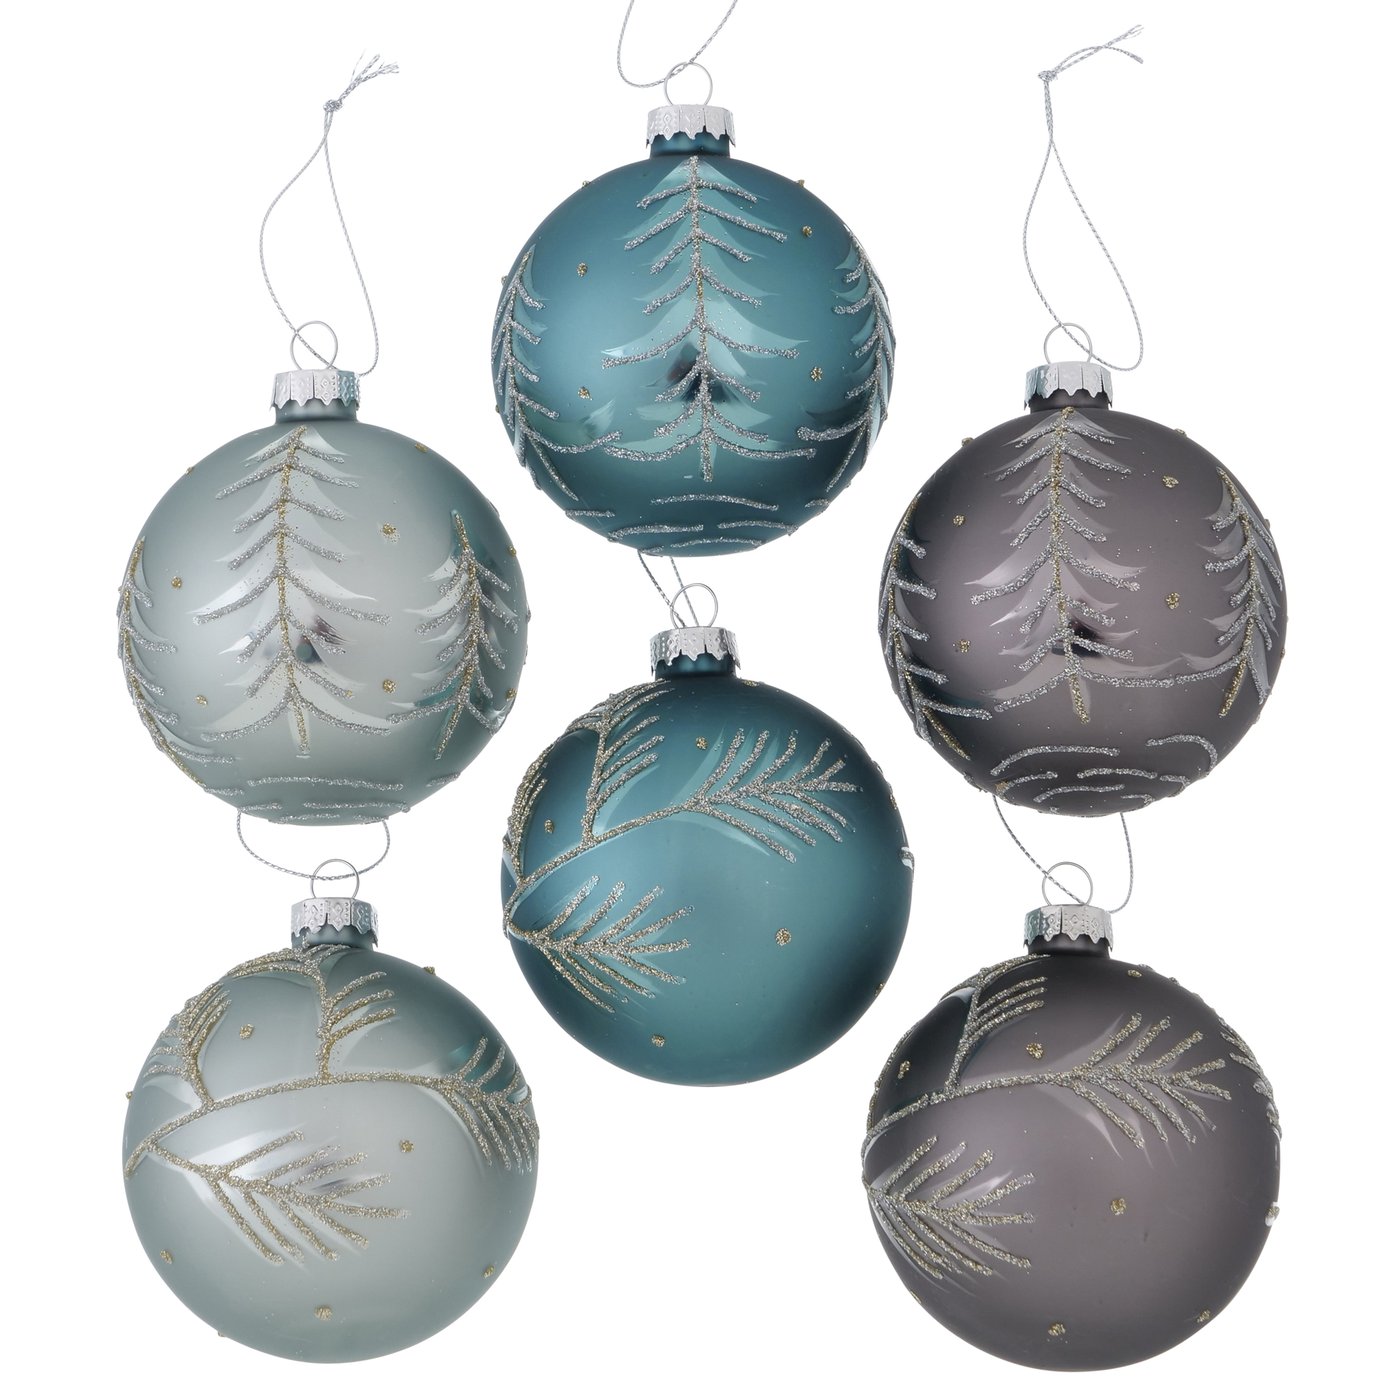 Glas Weihnachtskugel blau grau türkis silber mit Zweigen, 2012099, 4020607893757, Christbaumkugeln, Weihnachtsbaumkugeln